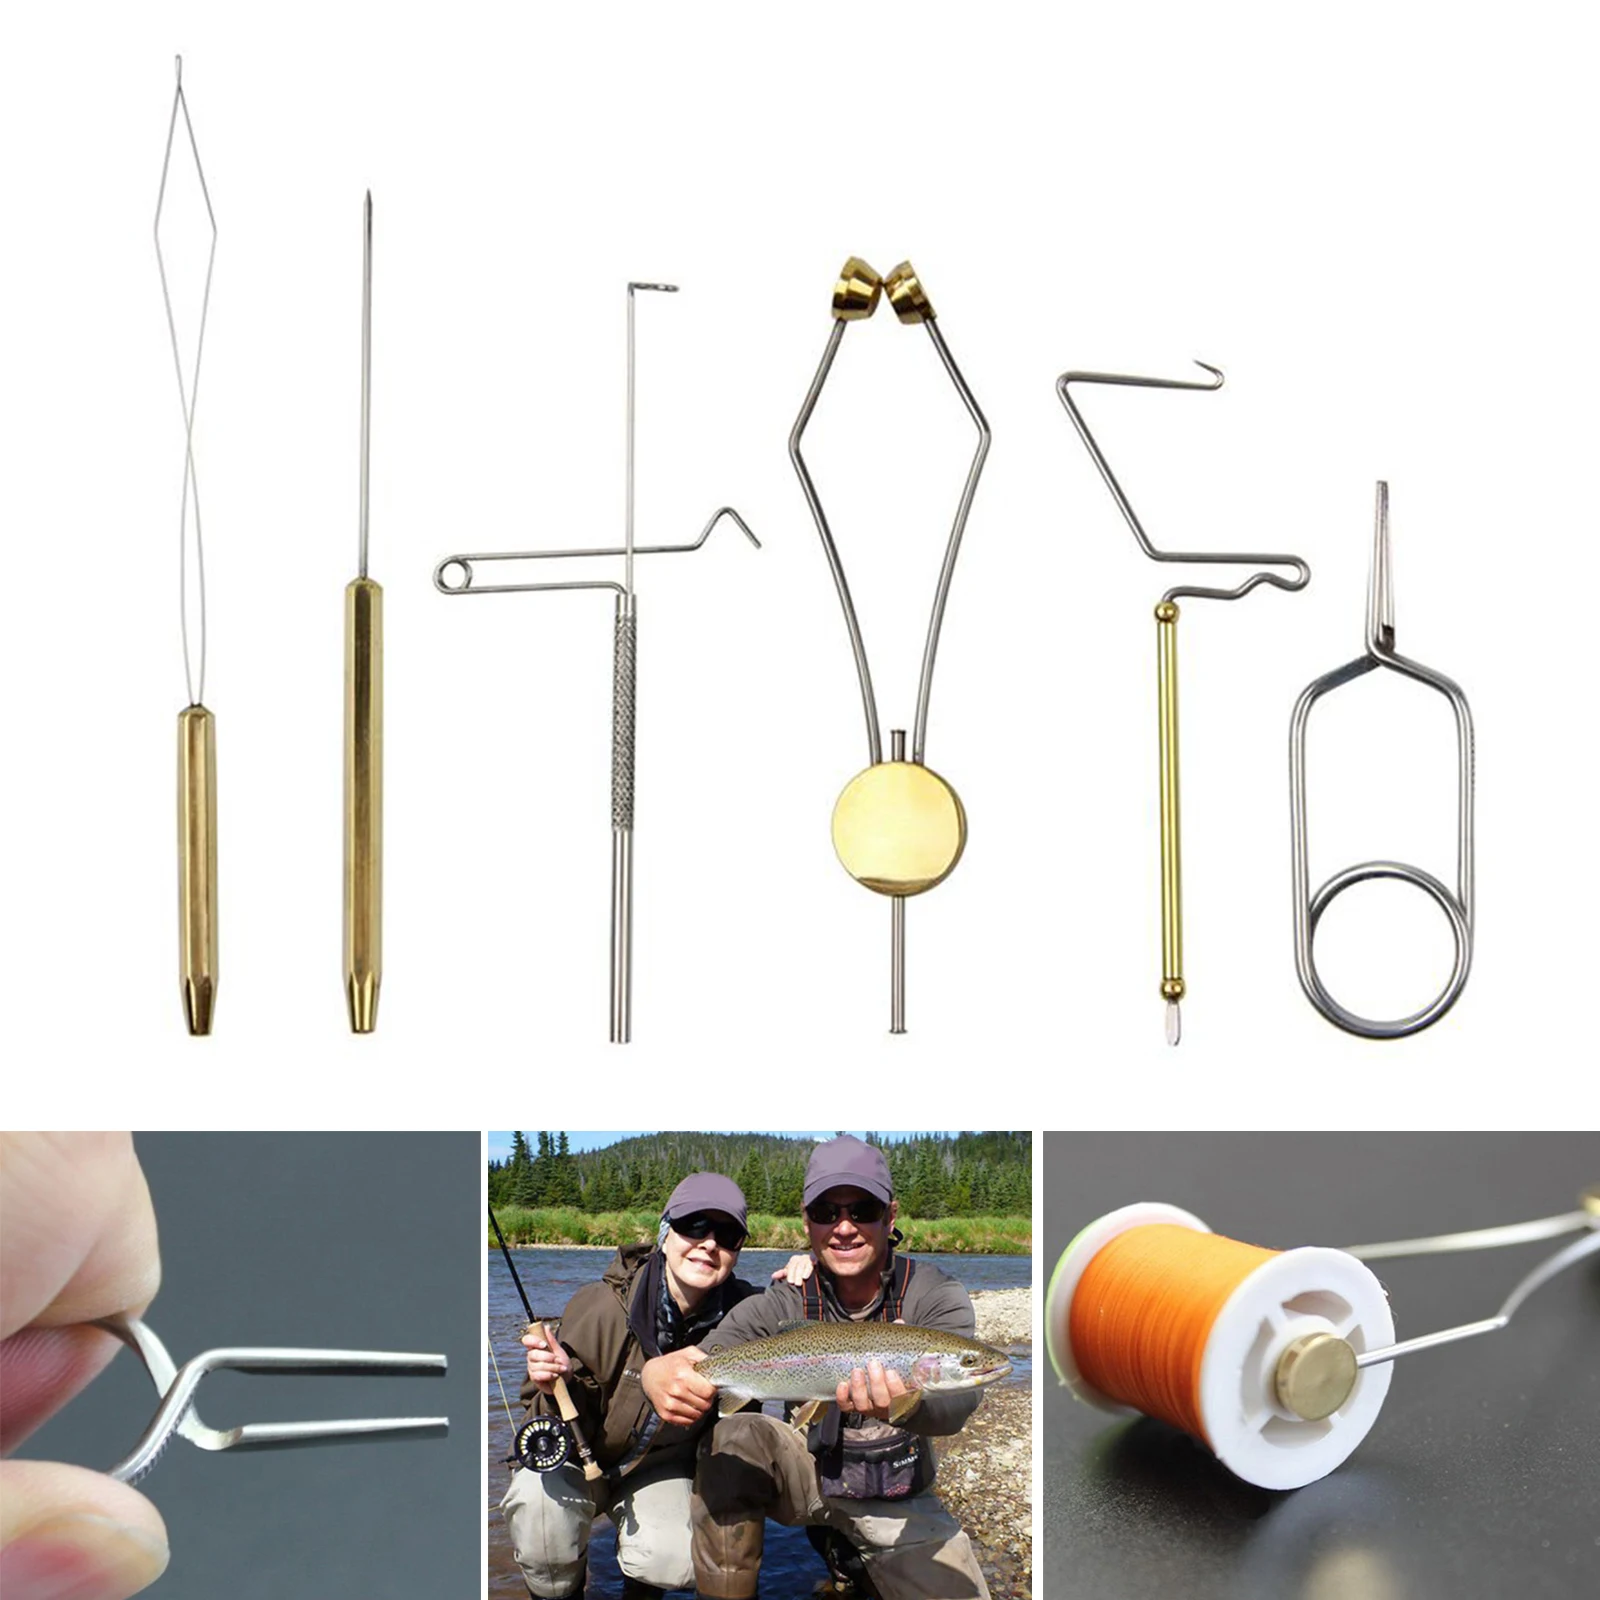 6x Fly Tying Tools Fishing Bodkin Dubbing Needle Brass Bobbin Threader